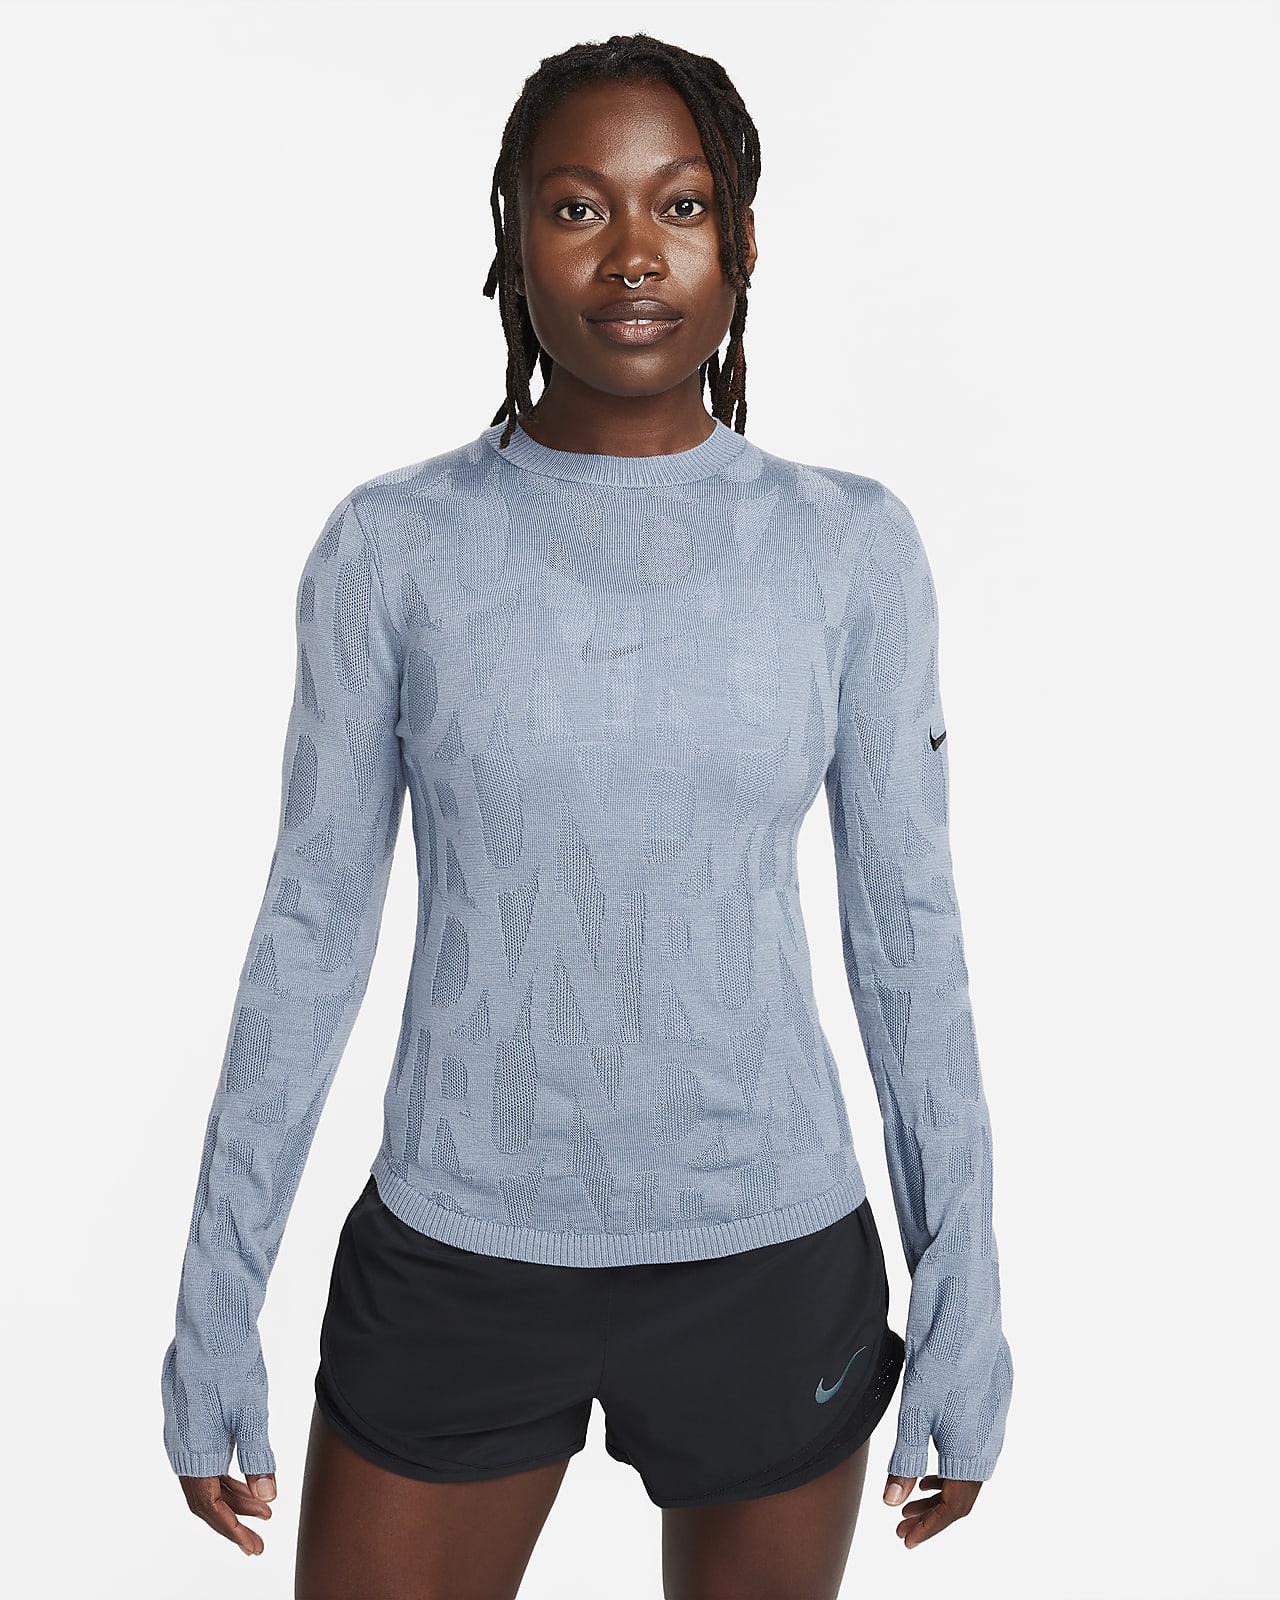 Camada intermédia de running Nike Running Division para mulher